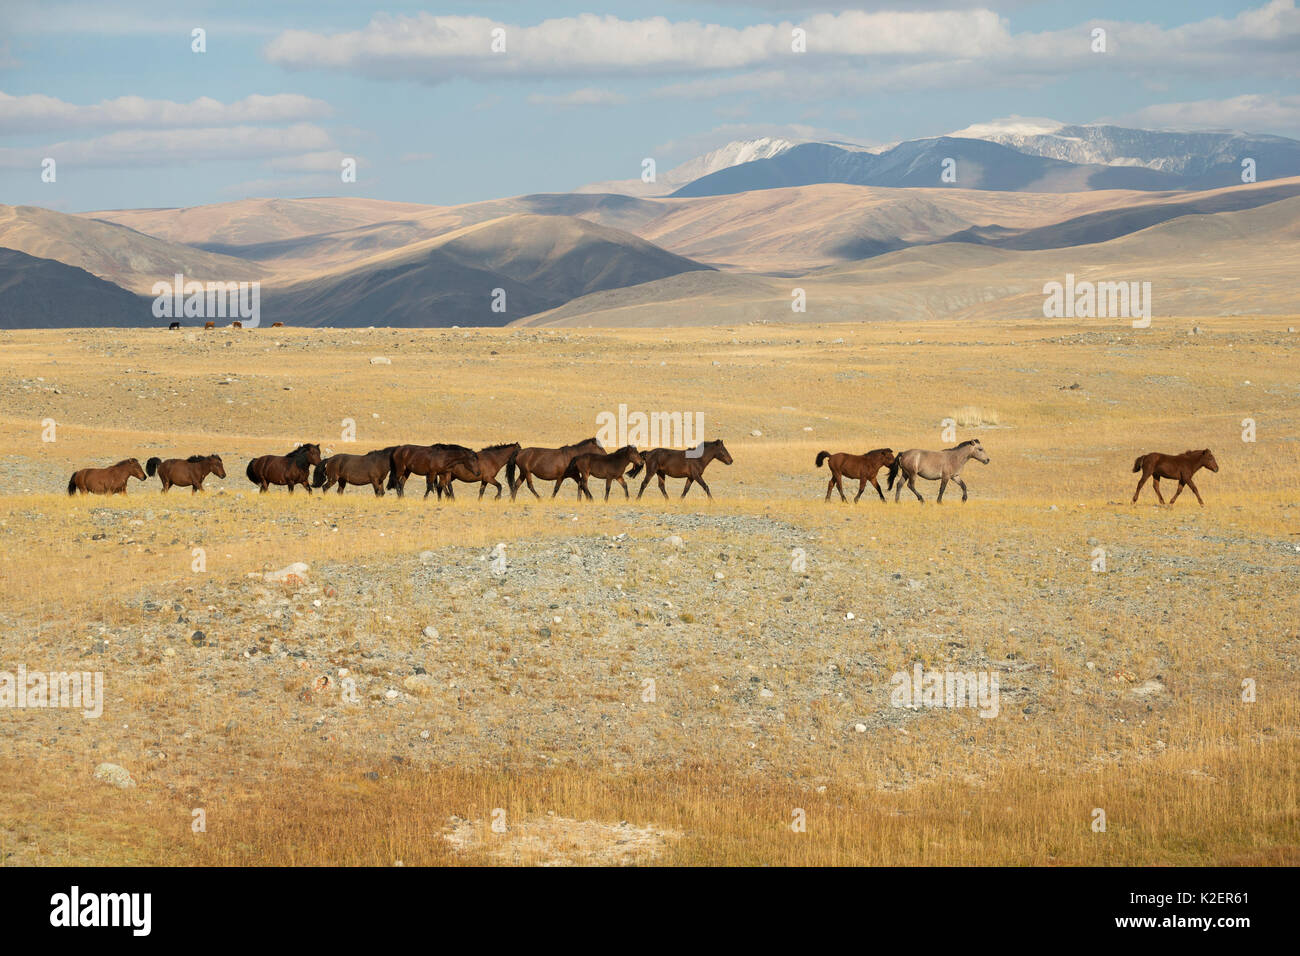 Banda de salvajes caballos mongoles ejecuta llanuras al pie de la montaña Uul Dungurukh, cerca de la frontera con China y Kazajstán, Bayan-Olgiy aymag, Mongolia. De septiembre. Foto de stock